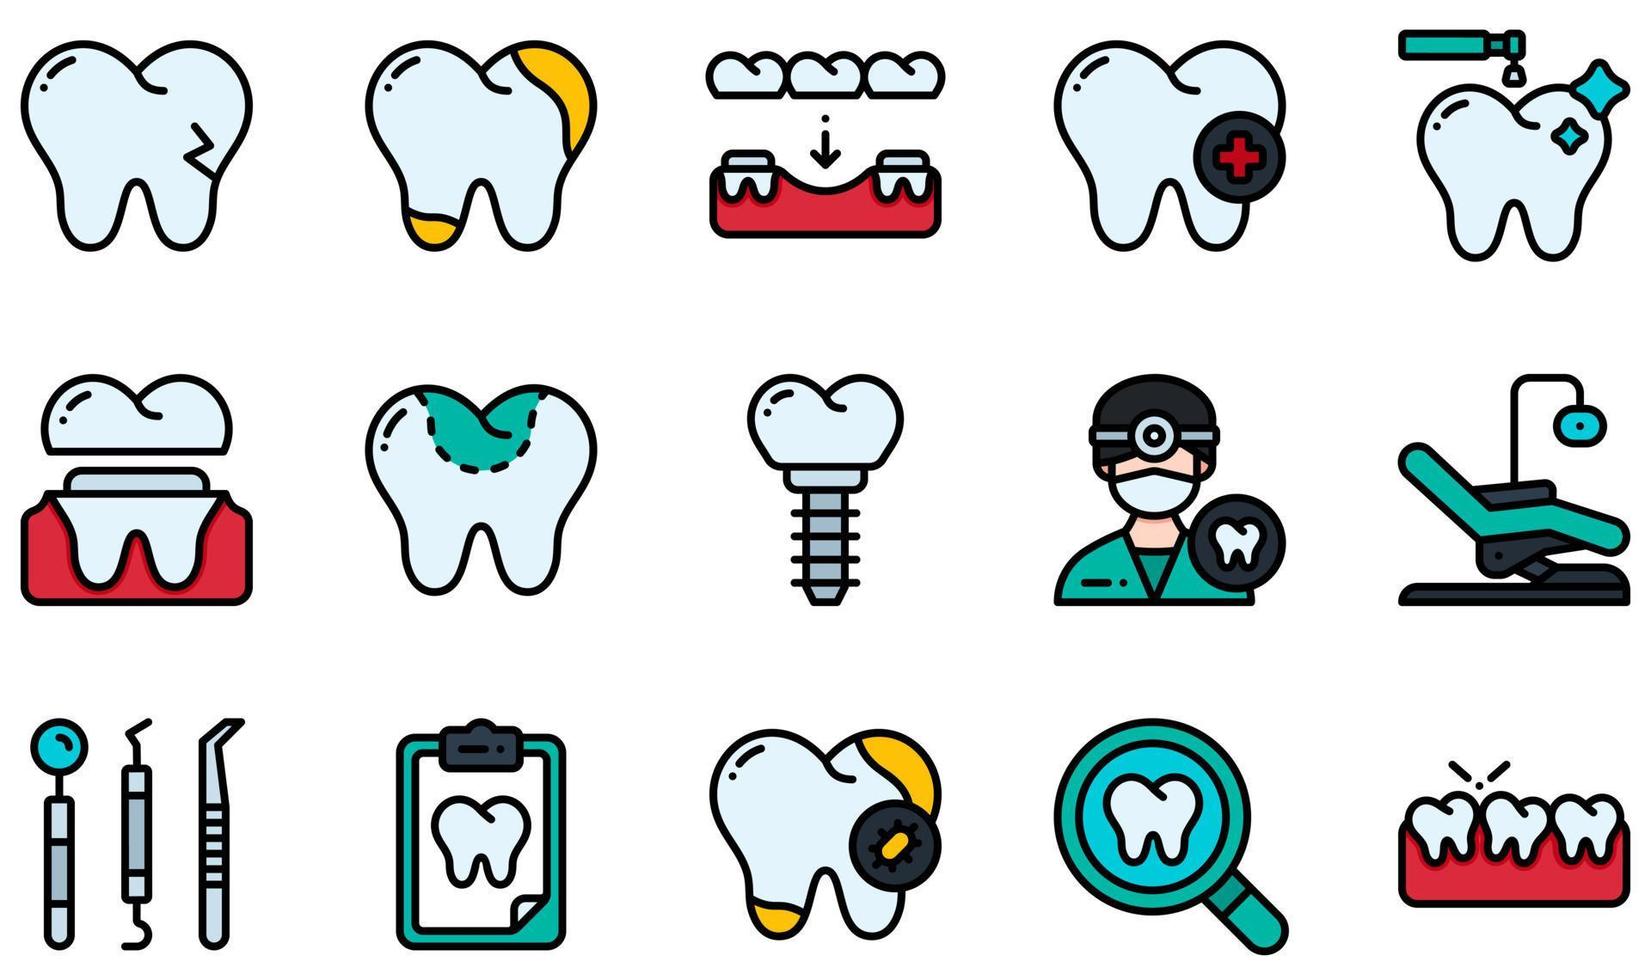 set di icone vettoriali relative all'odontoiatria. contiene icone come dente rotto, carie, cure odontoiatriche, corona dentale, otturazione dentale, dentista e altro ancora.